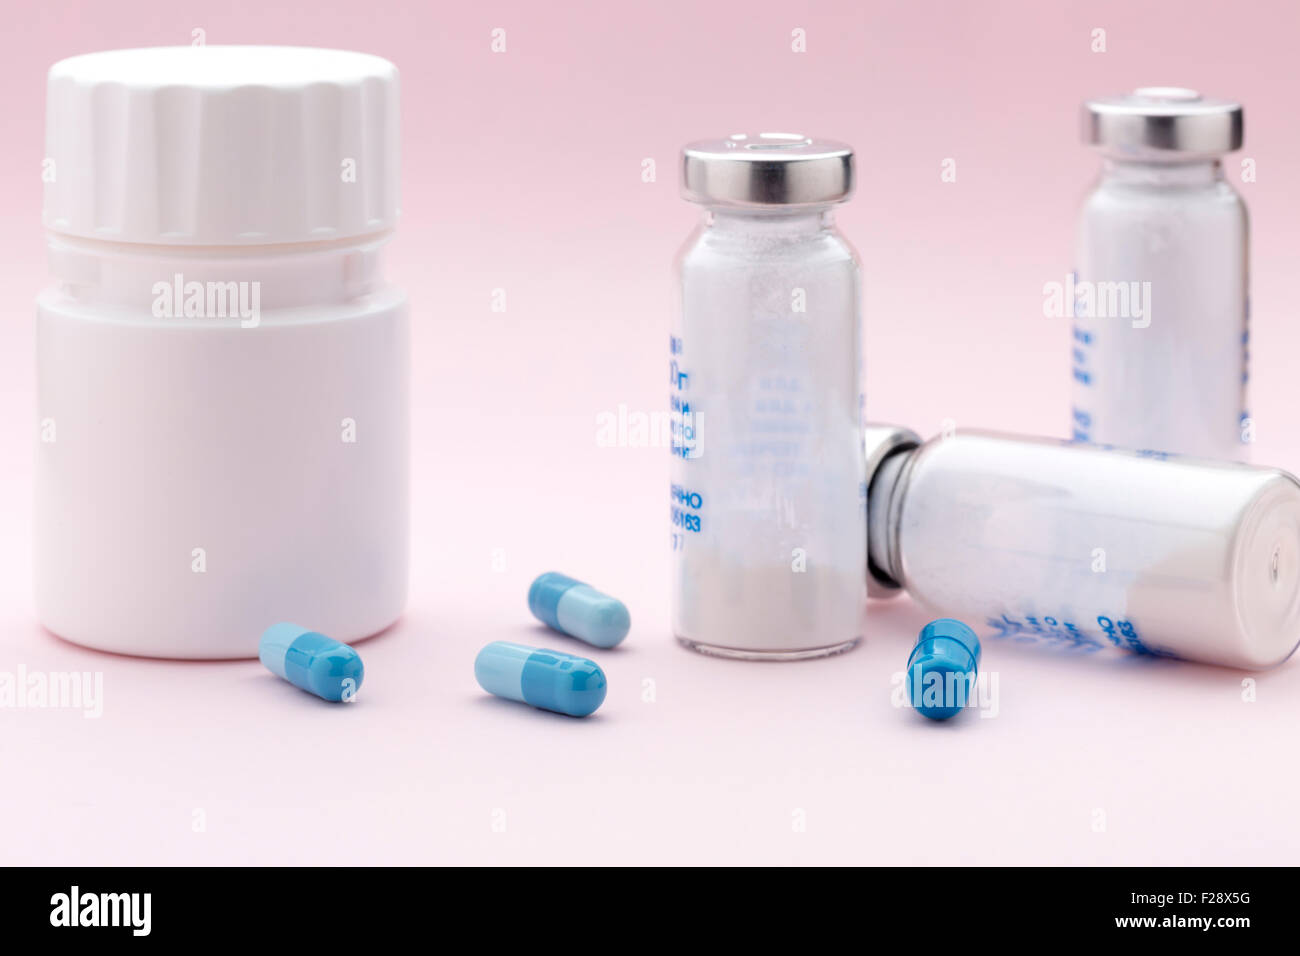 L'ensemble des flacons de médicaments, seringues d'injection et capsules colorées Banque D'Images